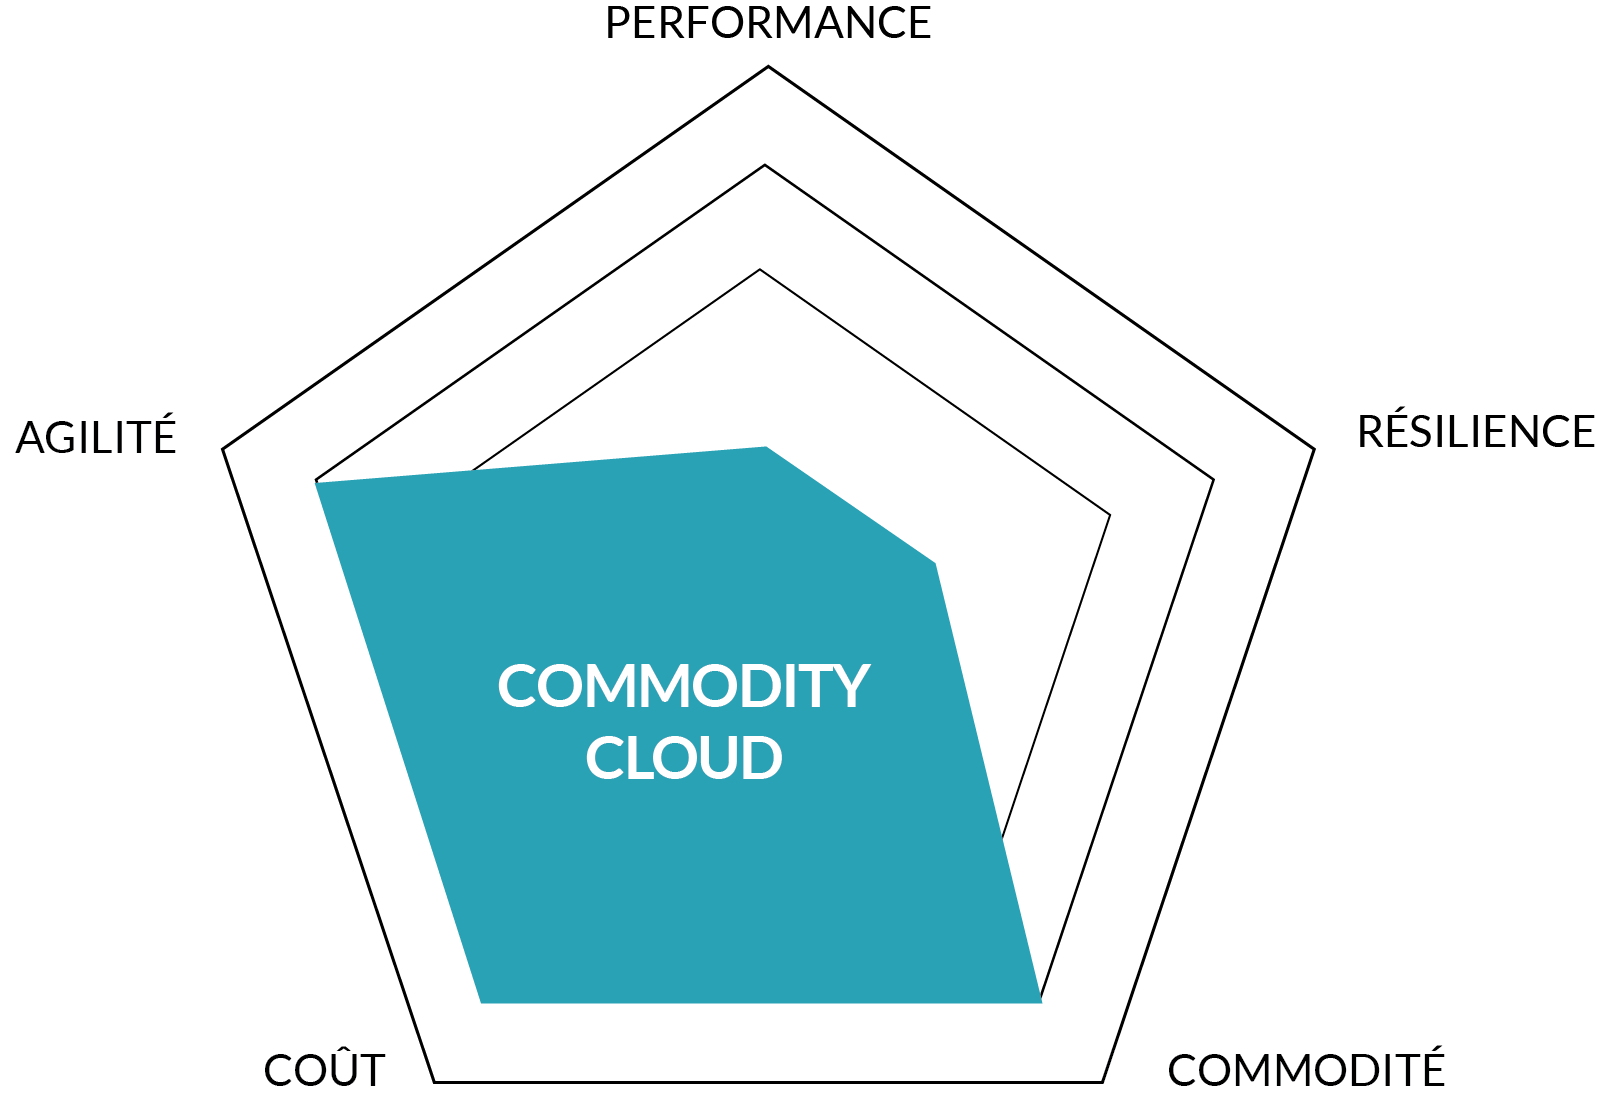 Le commodity cloud représente une proposition de valeur très différente